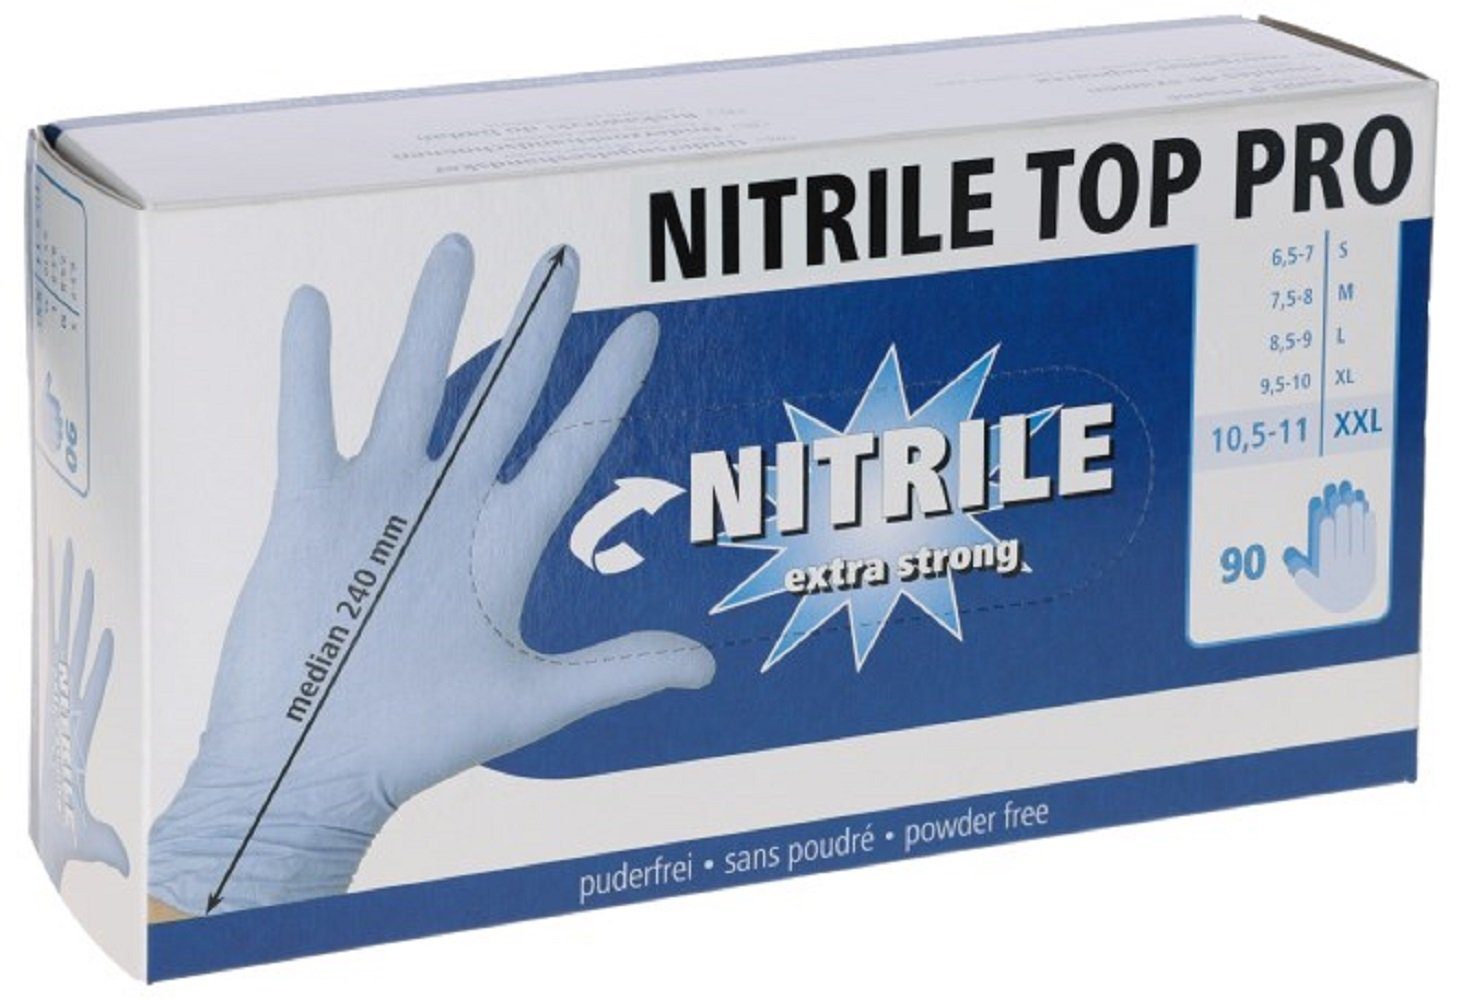 Größe 153070 Einweghandschuhe Nitril Kerbl Pro, Top 6,5-7 blau, / S, Einmalhandschuh